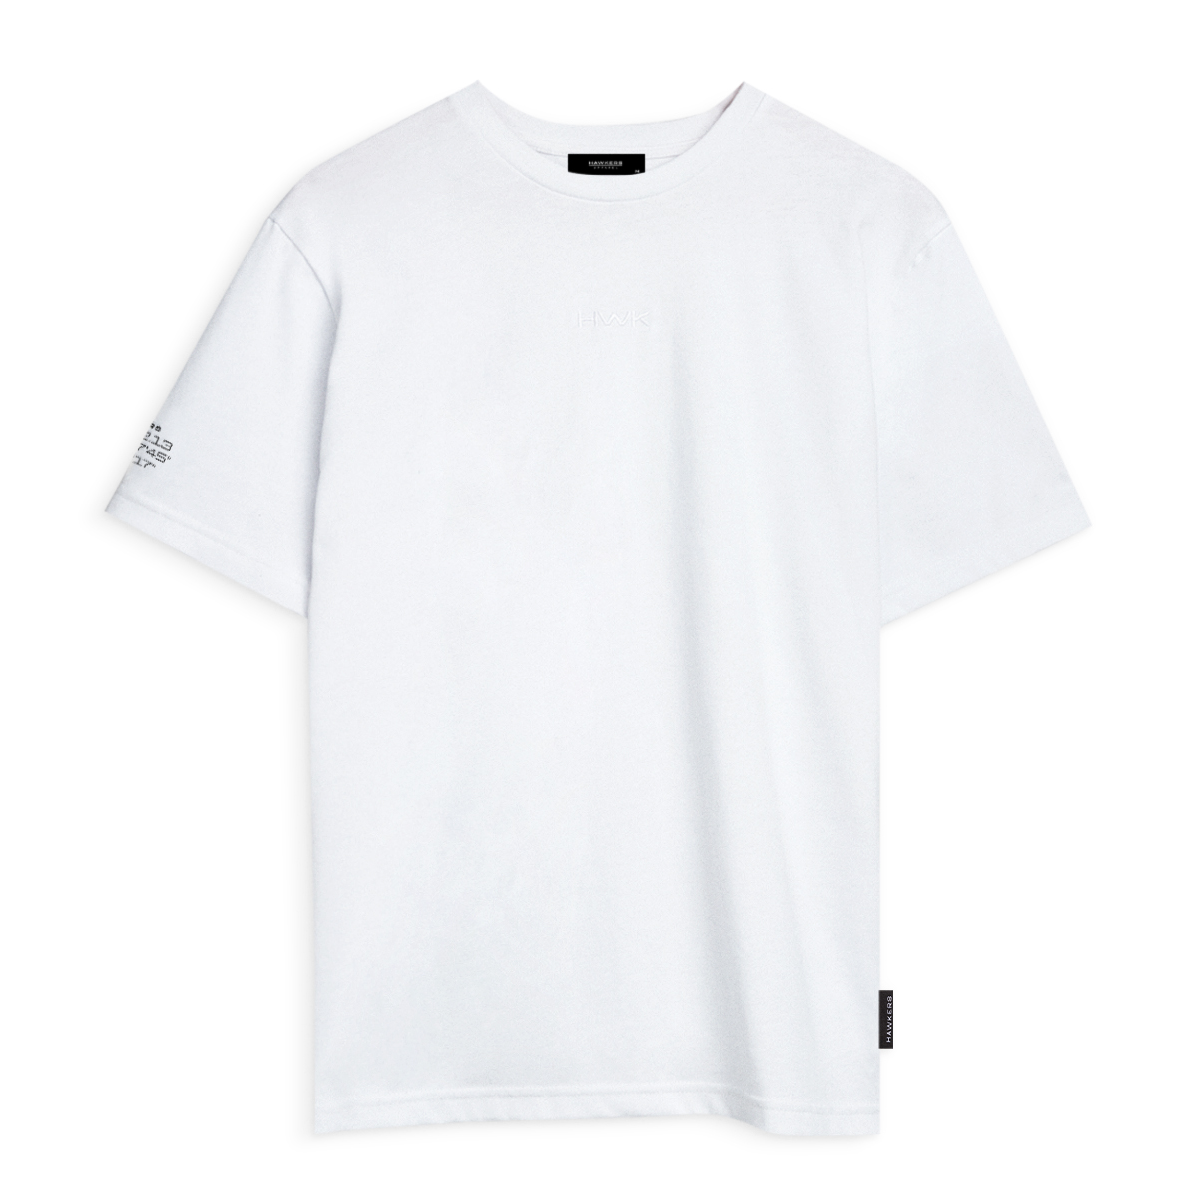 Lax T-shirt White (xl)